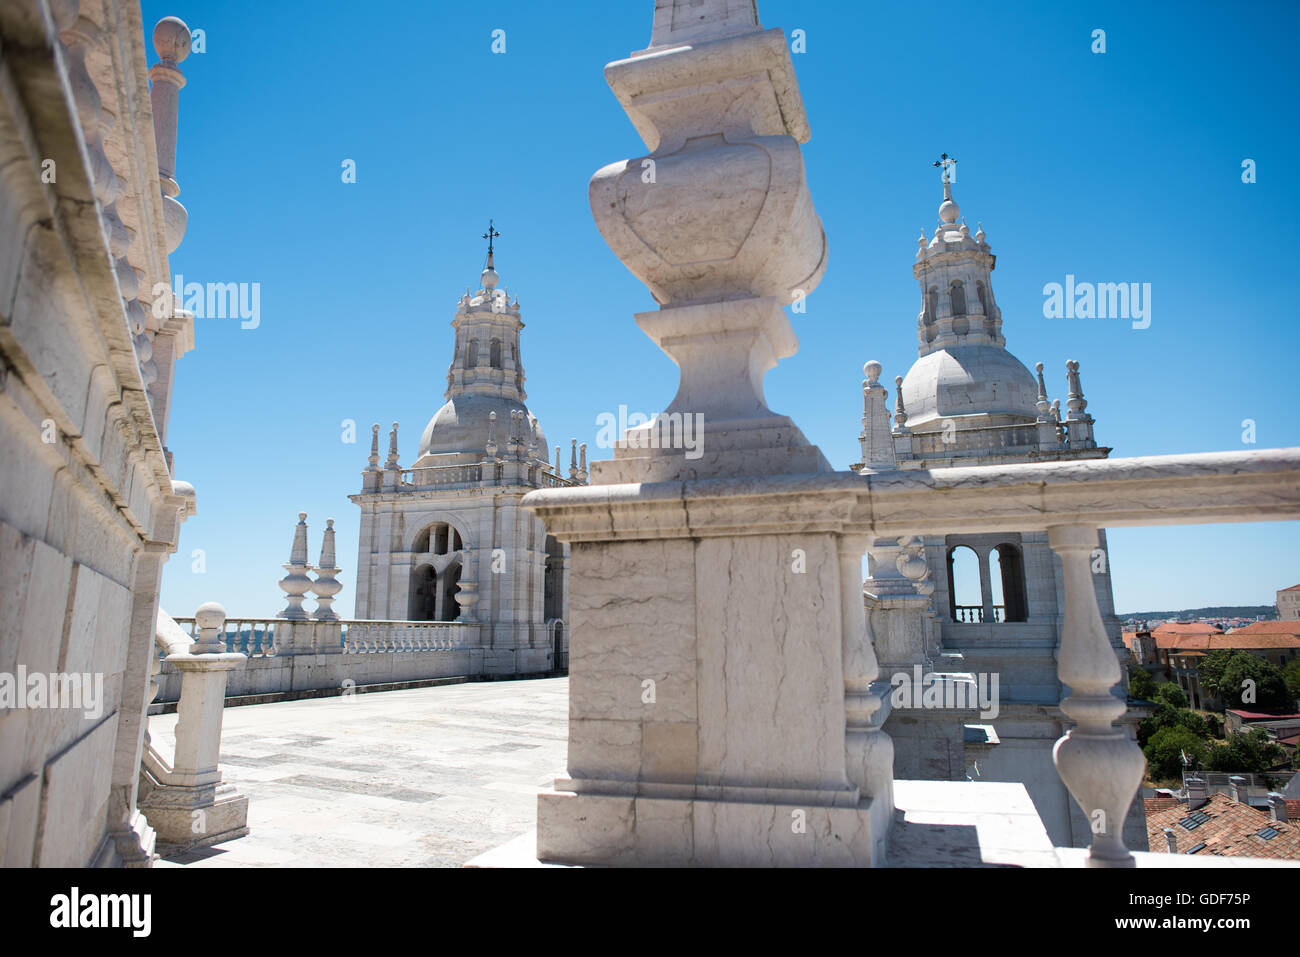 Lisbona, Portogallo - Il Monastero di São Vicente de Fora è un monastero del XVII secolo la chiesa e il monastero nel quartiere di Alfama di Lisbona. Funzioni it allestita sezioni in stile barocco come pure il Braganza Pantheon, dove il Re che governarono il Portogallo tra il 1640 e il 1910 sono interrati. Foto Stock